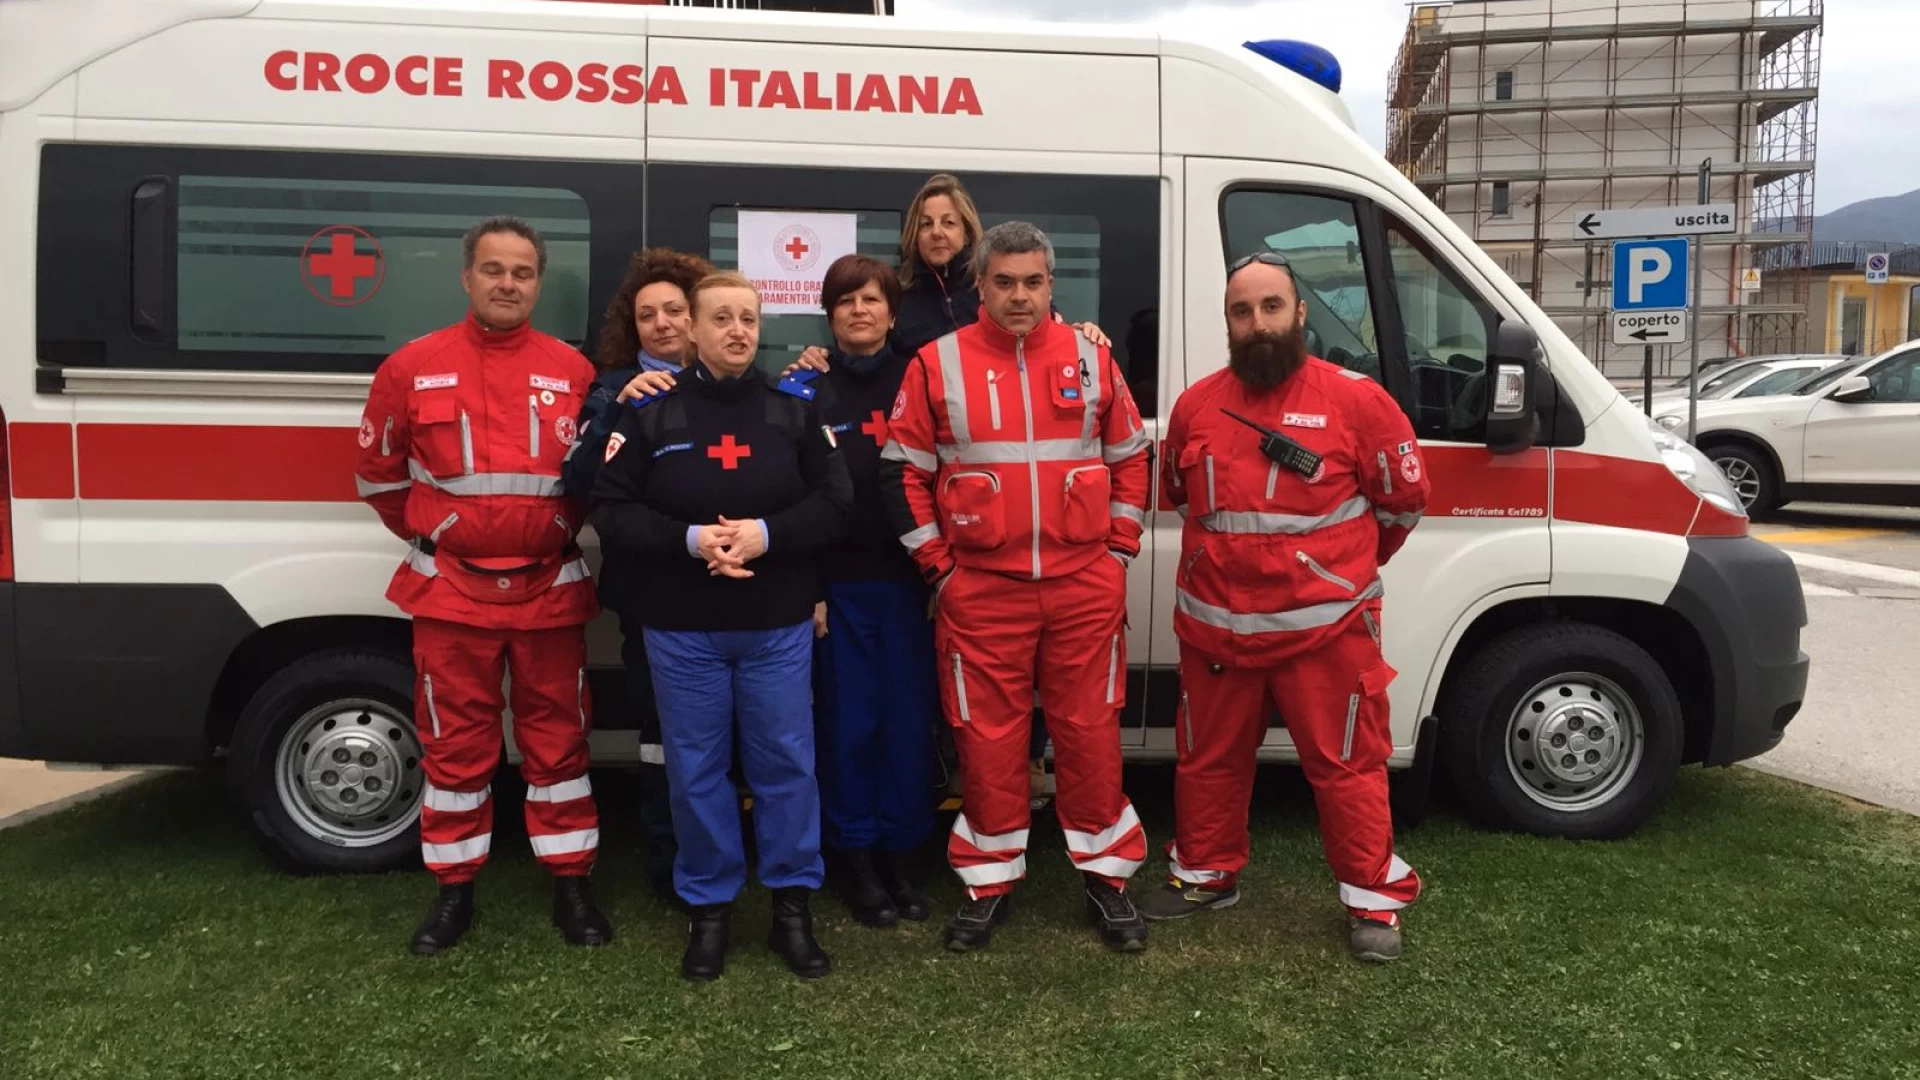 Atti vandalici contro i mezzi del Comitato di Isernia della Croce Rossa Italiana. La denuncia dell’Associazione di Volontariato